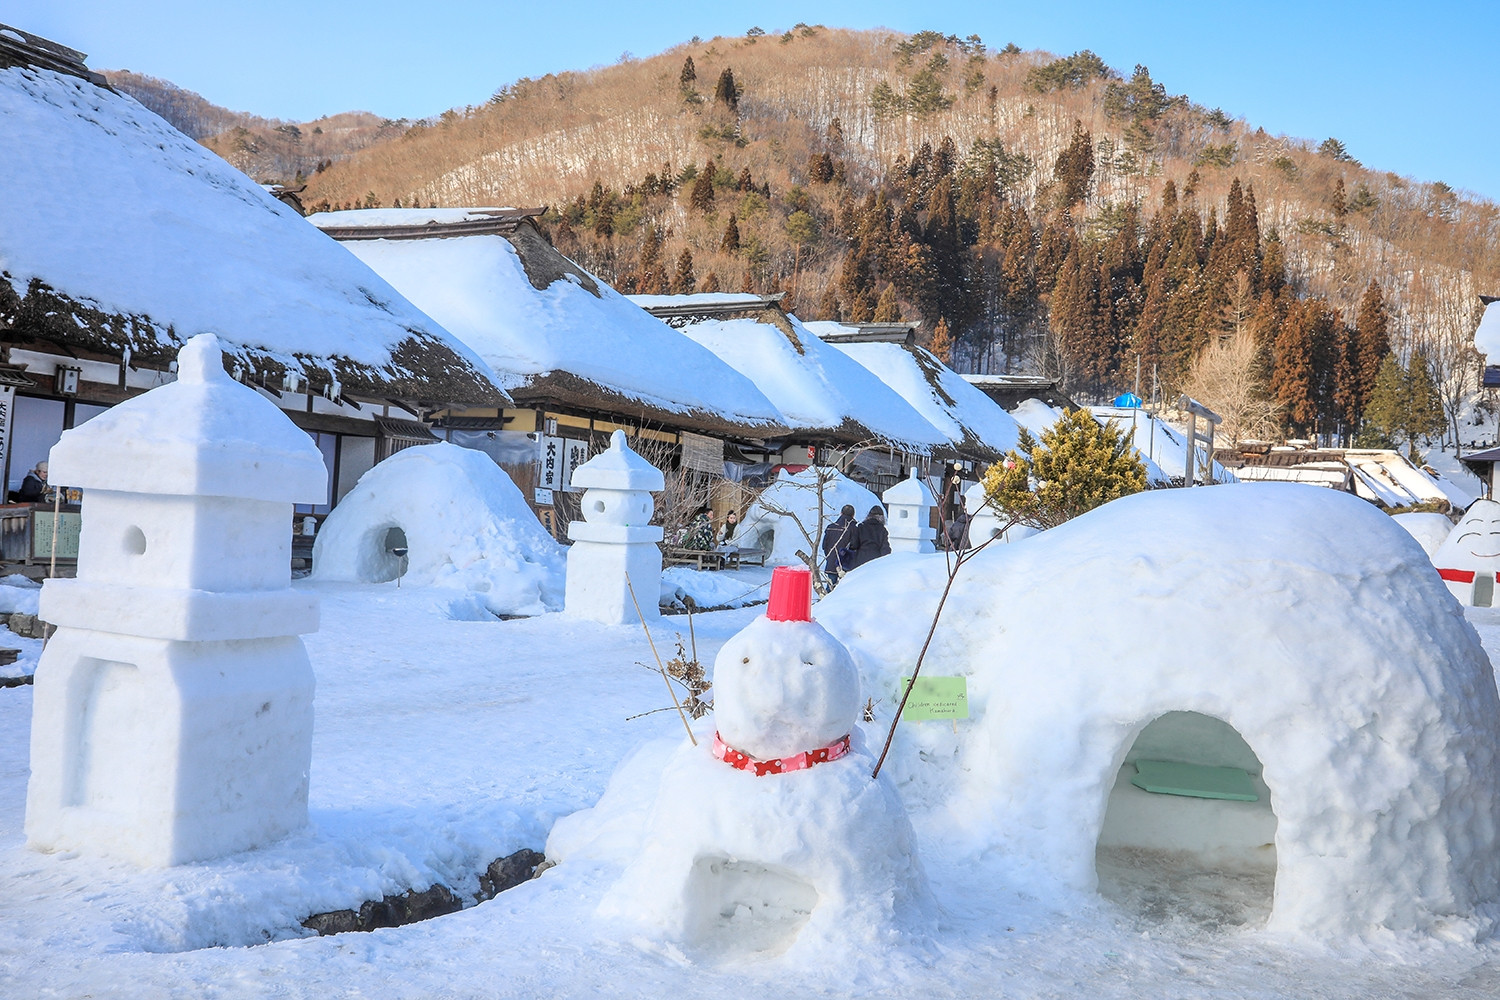 Ngôi làng cổ phủ tuyết như cổ tích. Ảnh: Club4traveler/Shutterstock.